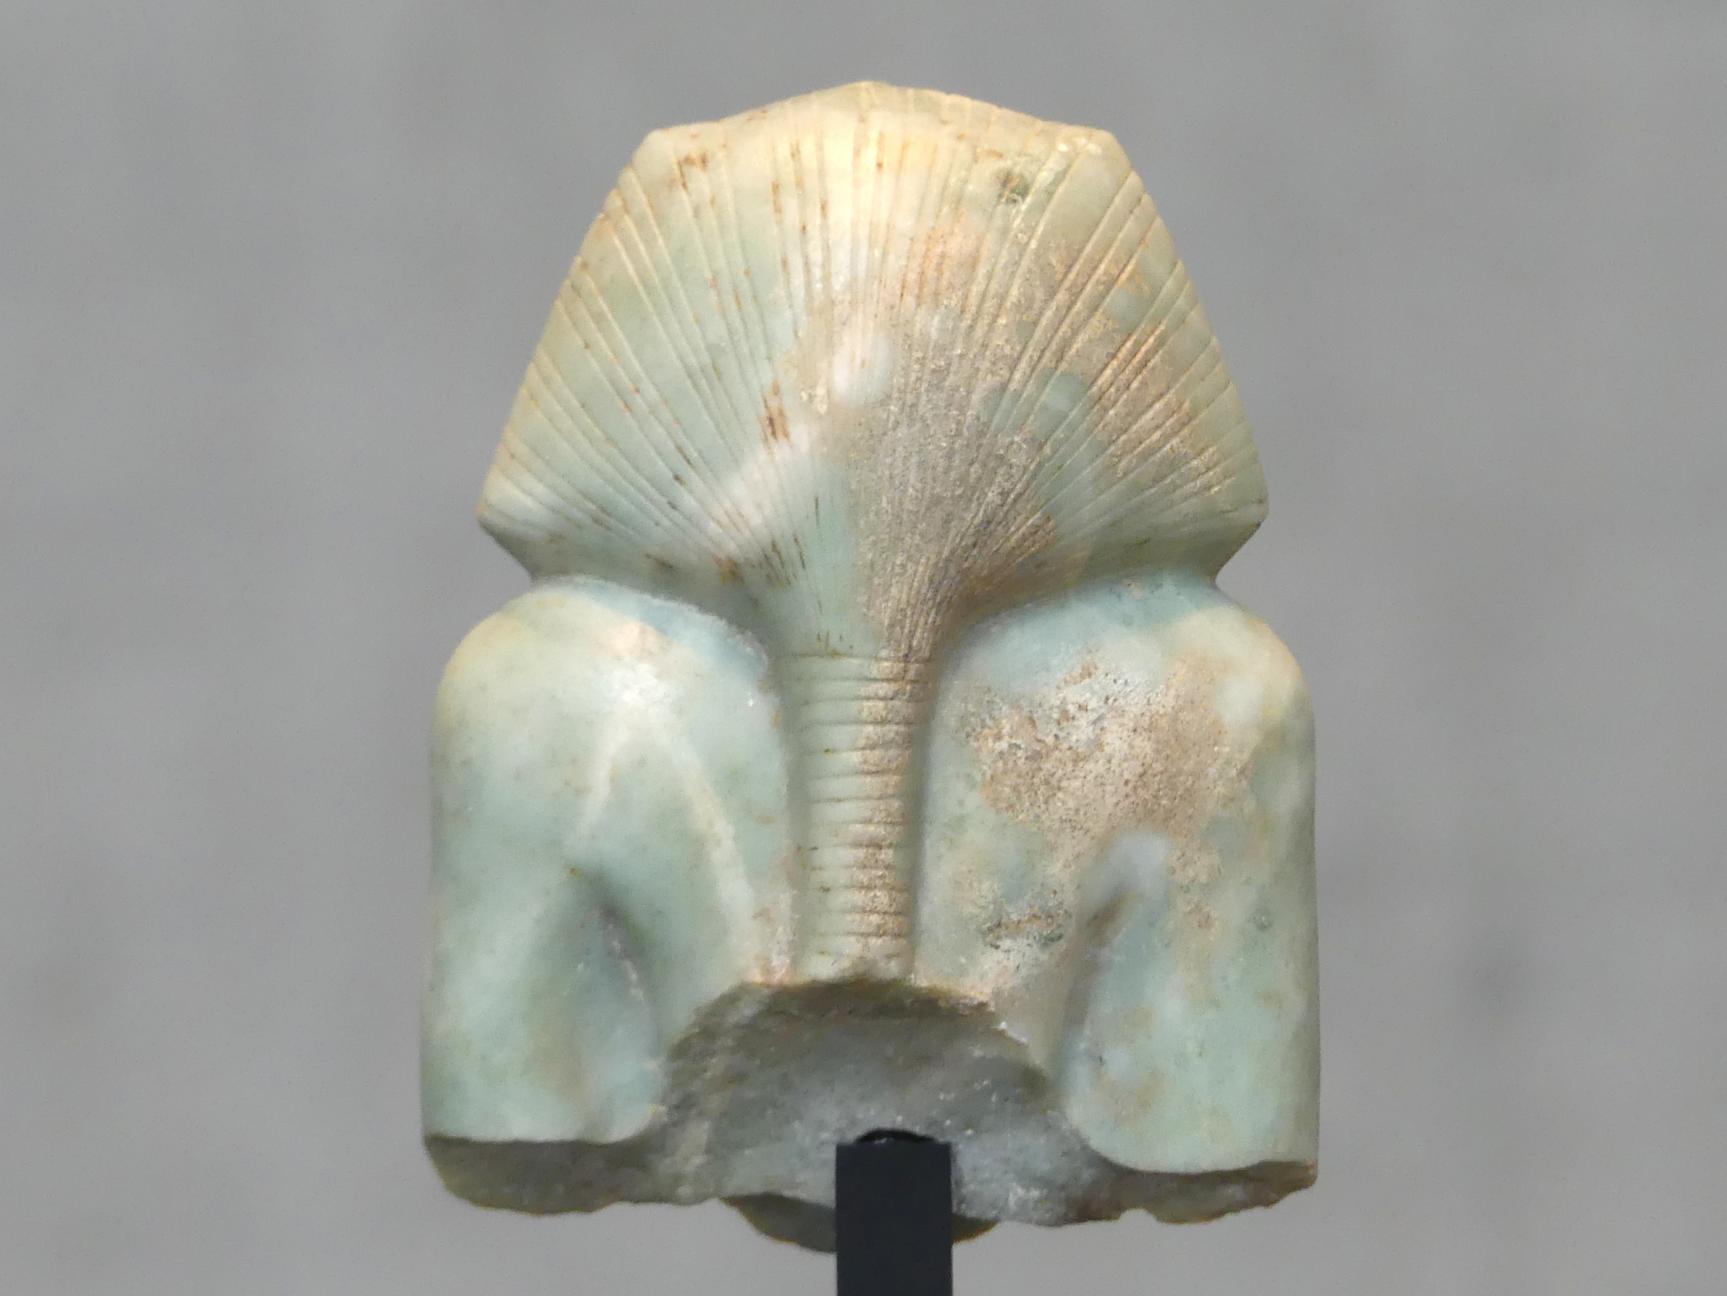 Oberteil einer Sitzfigur des Pharao Amenemhet III., 12. Dynastie, 1678 - 1634 v. Chr., 1800 v. Chr., Bild 4/5